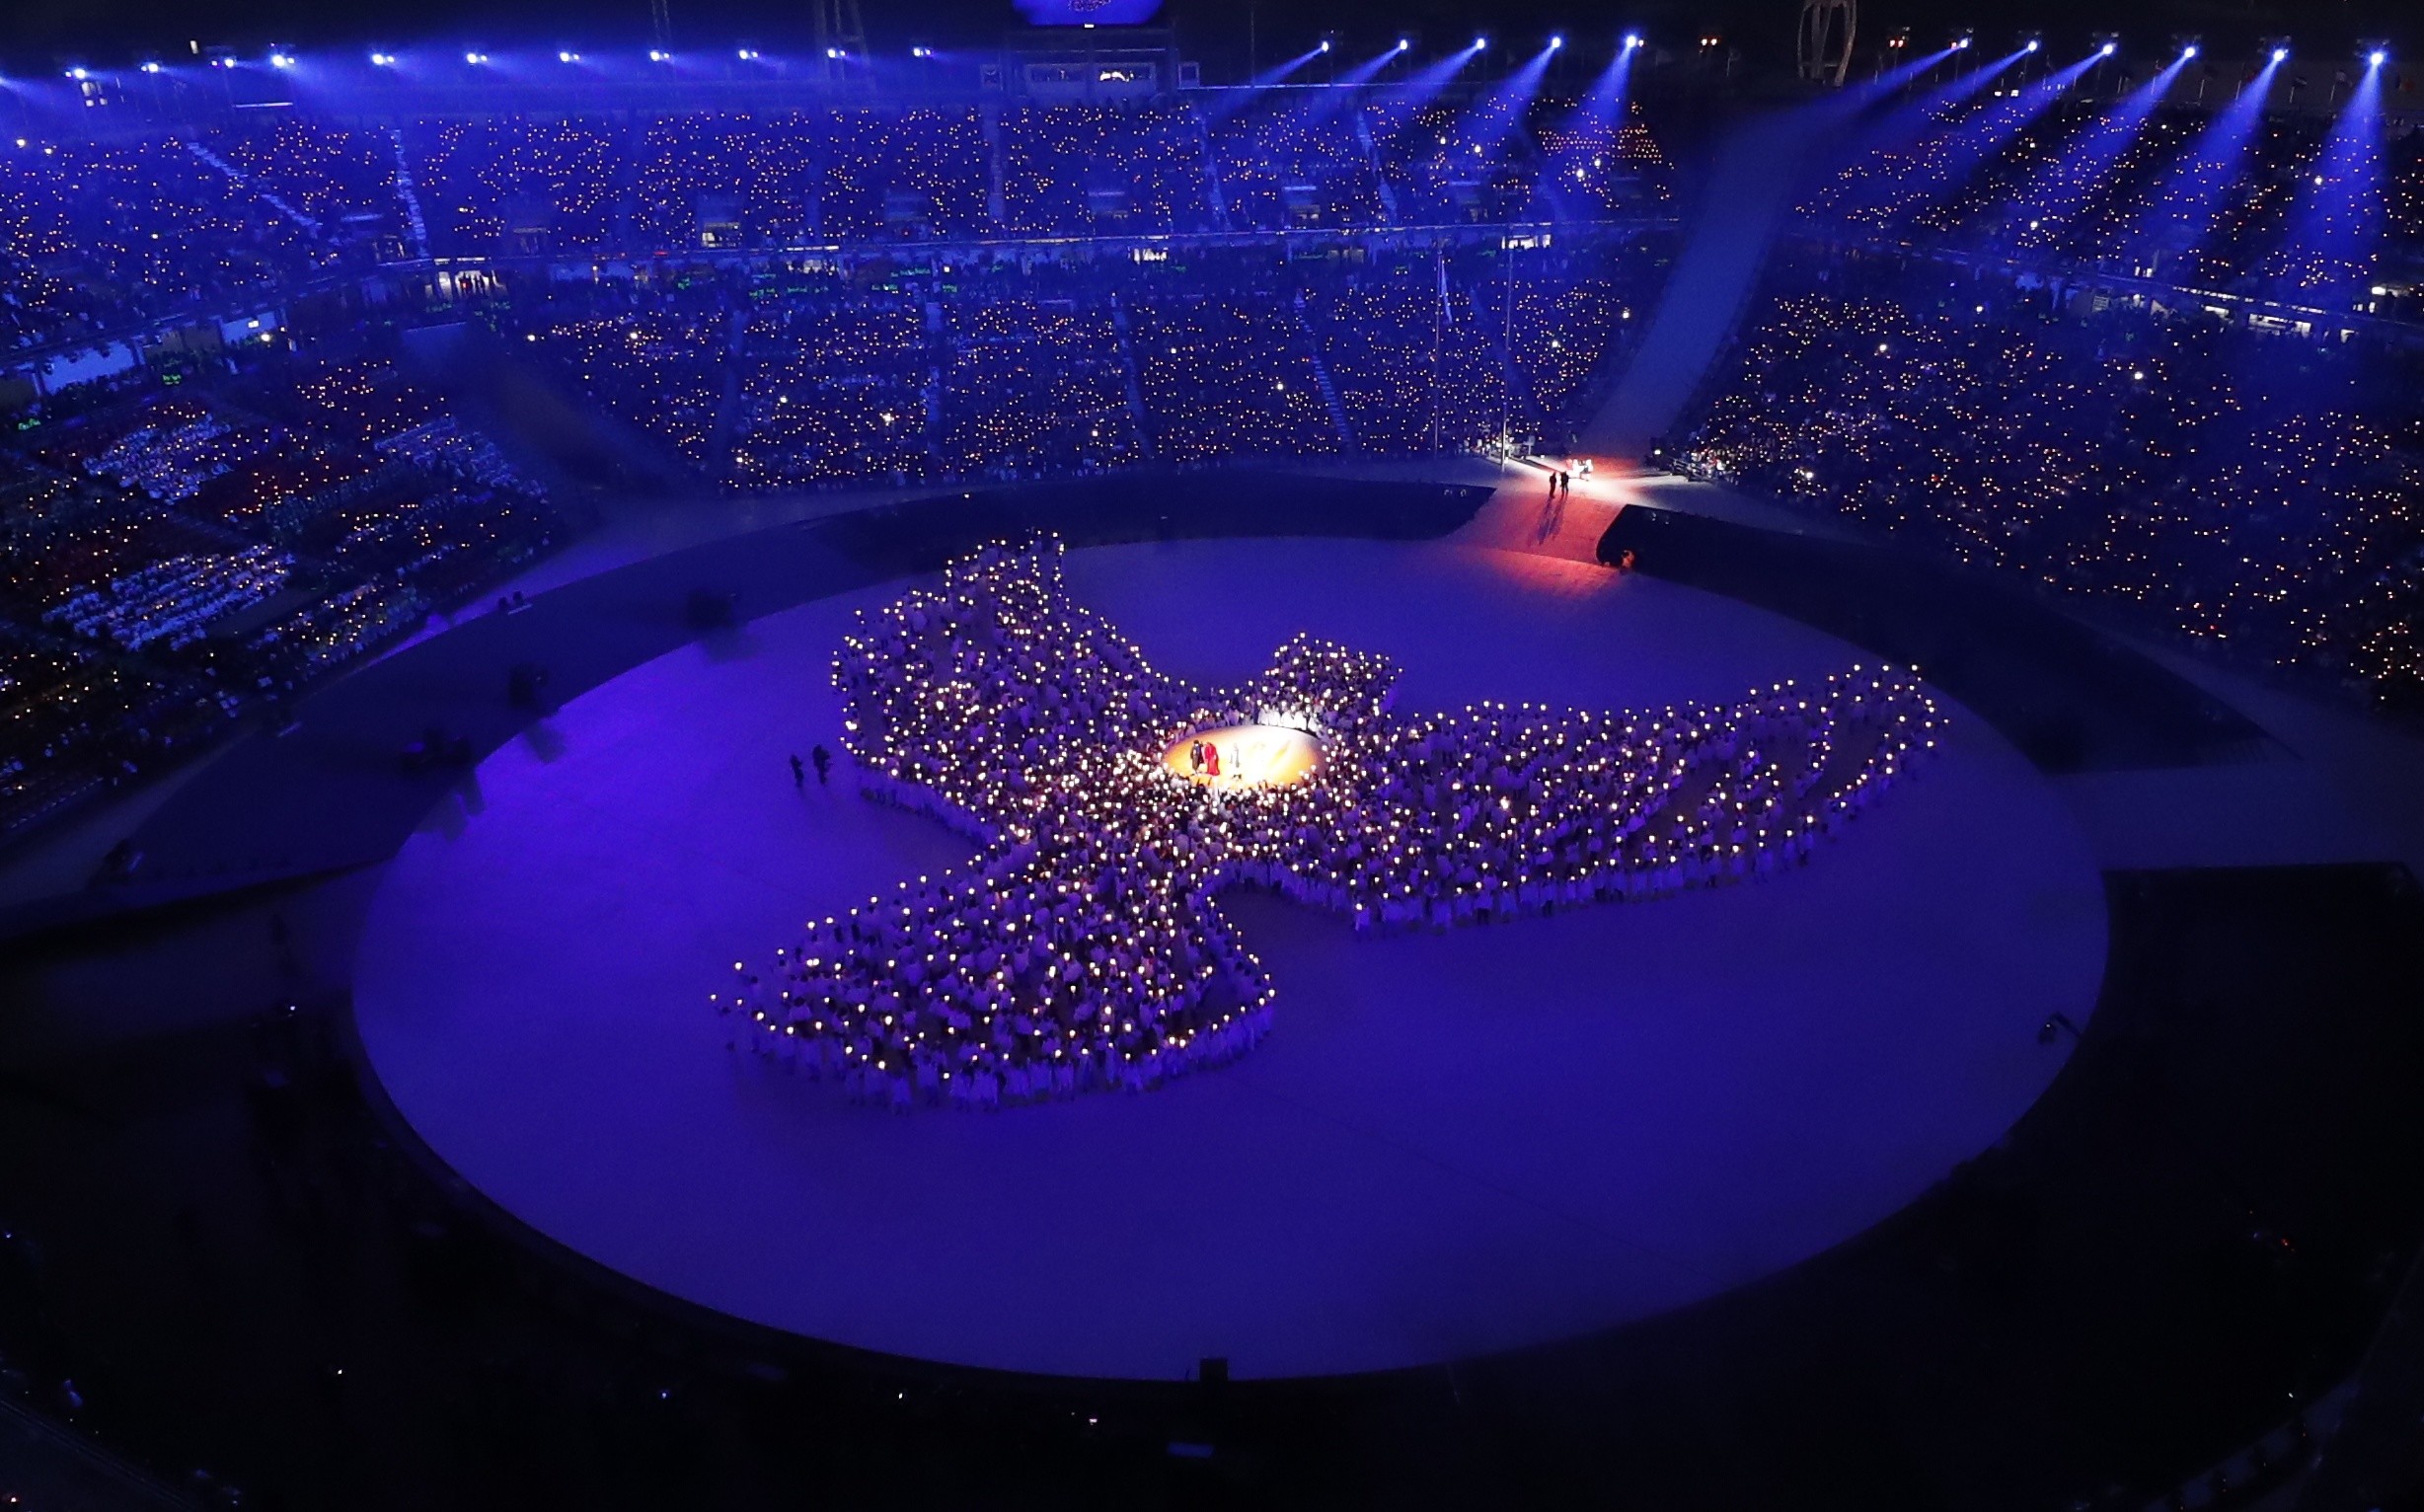 Голубь — символ мира во всём мире и месседж Олимпиады-2018. Фото: © REUTERS/Pawel Kopczynski